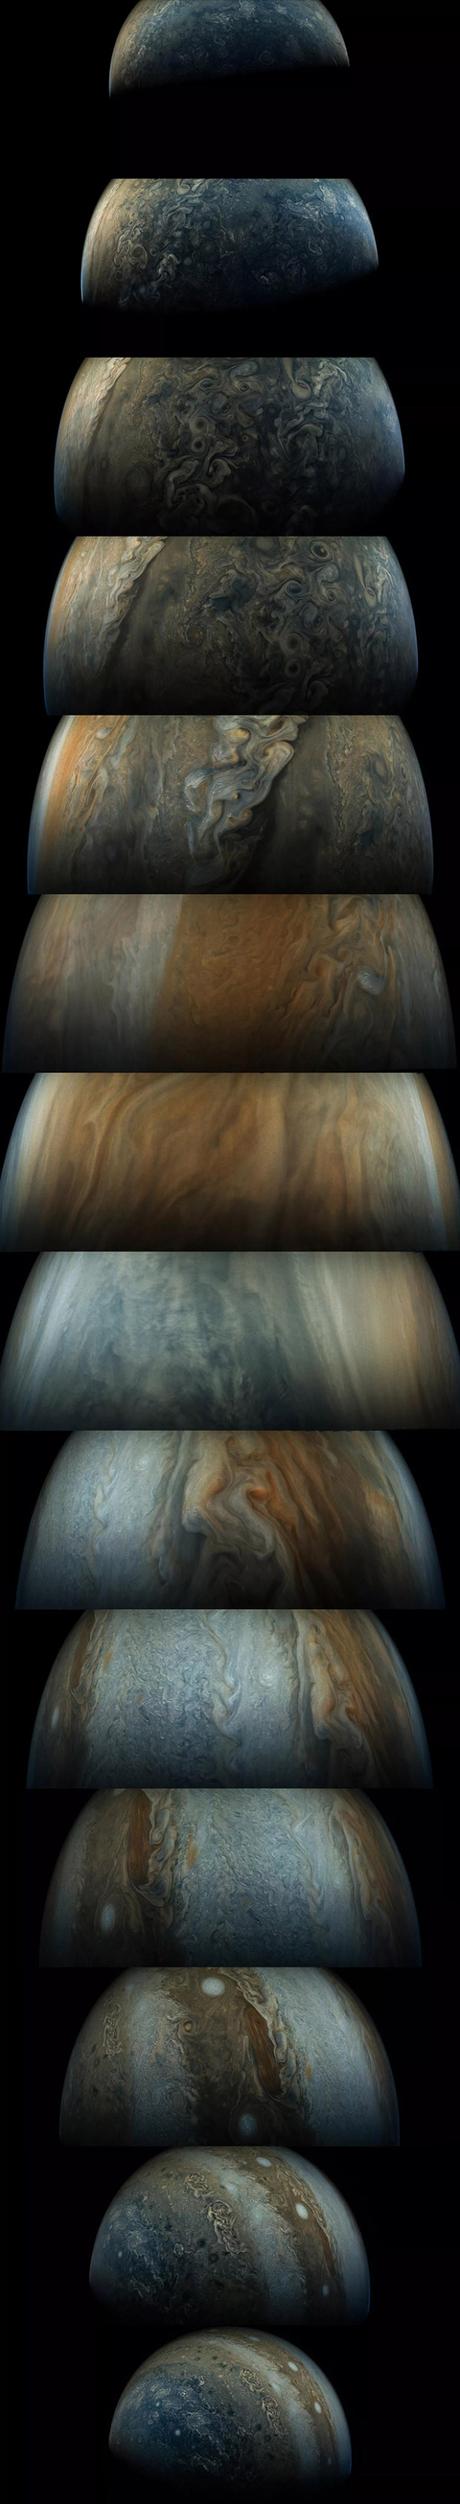 Jupiter en photos comme vous ne l’avez jamais vu !